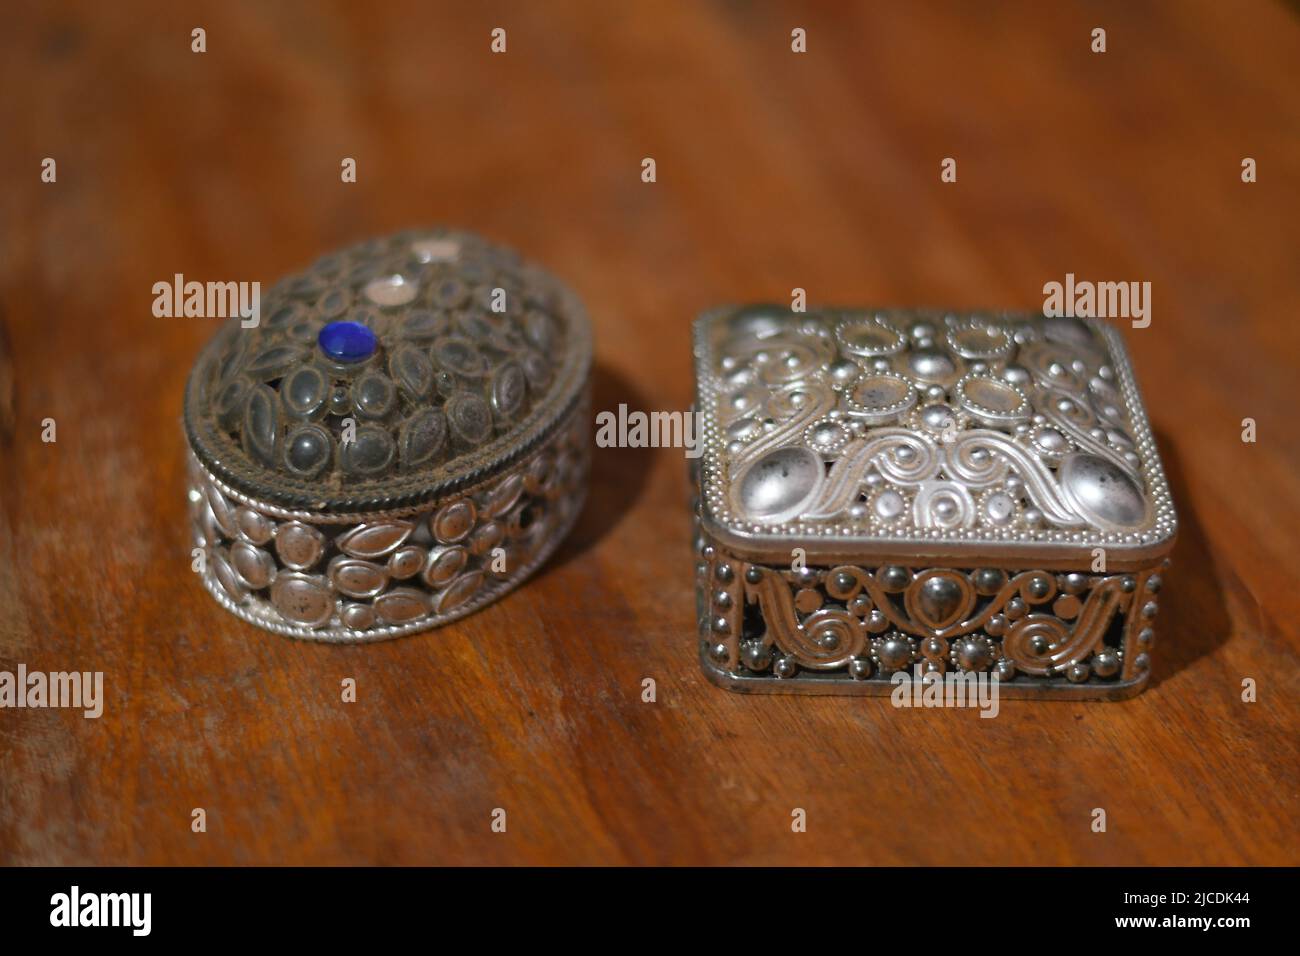 Deux coffrets à bijoux de culture arabe sont sur une table Banque D'Images